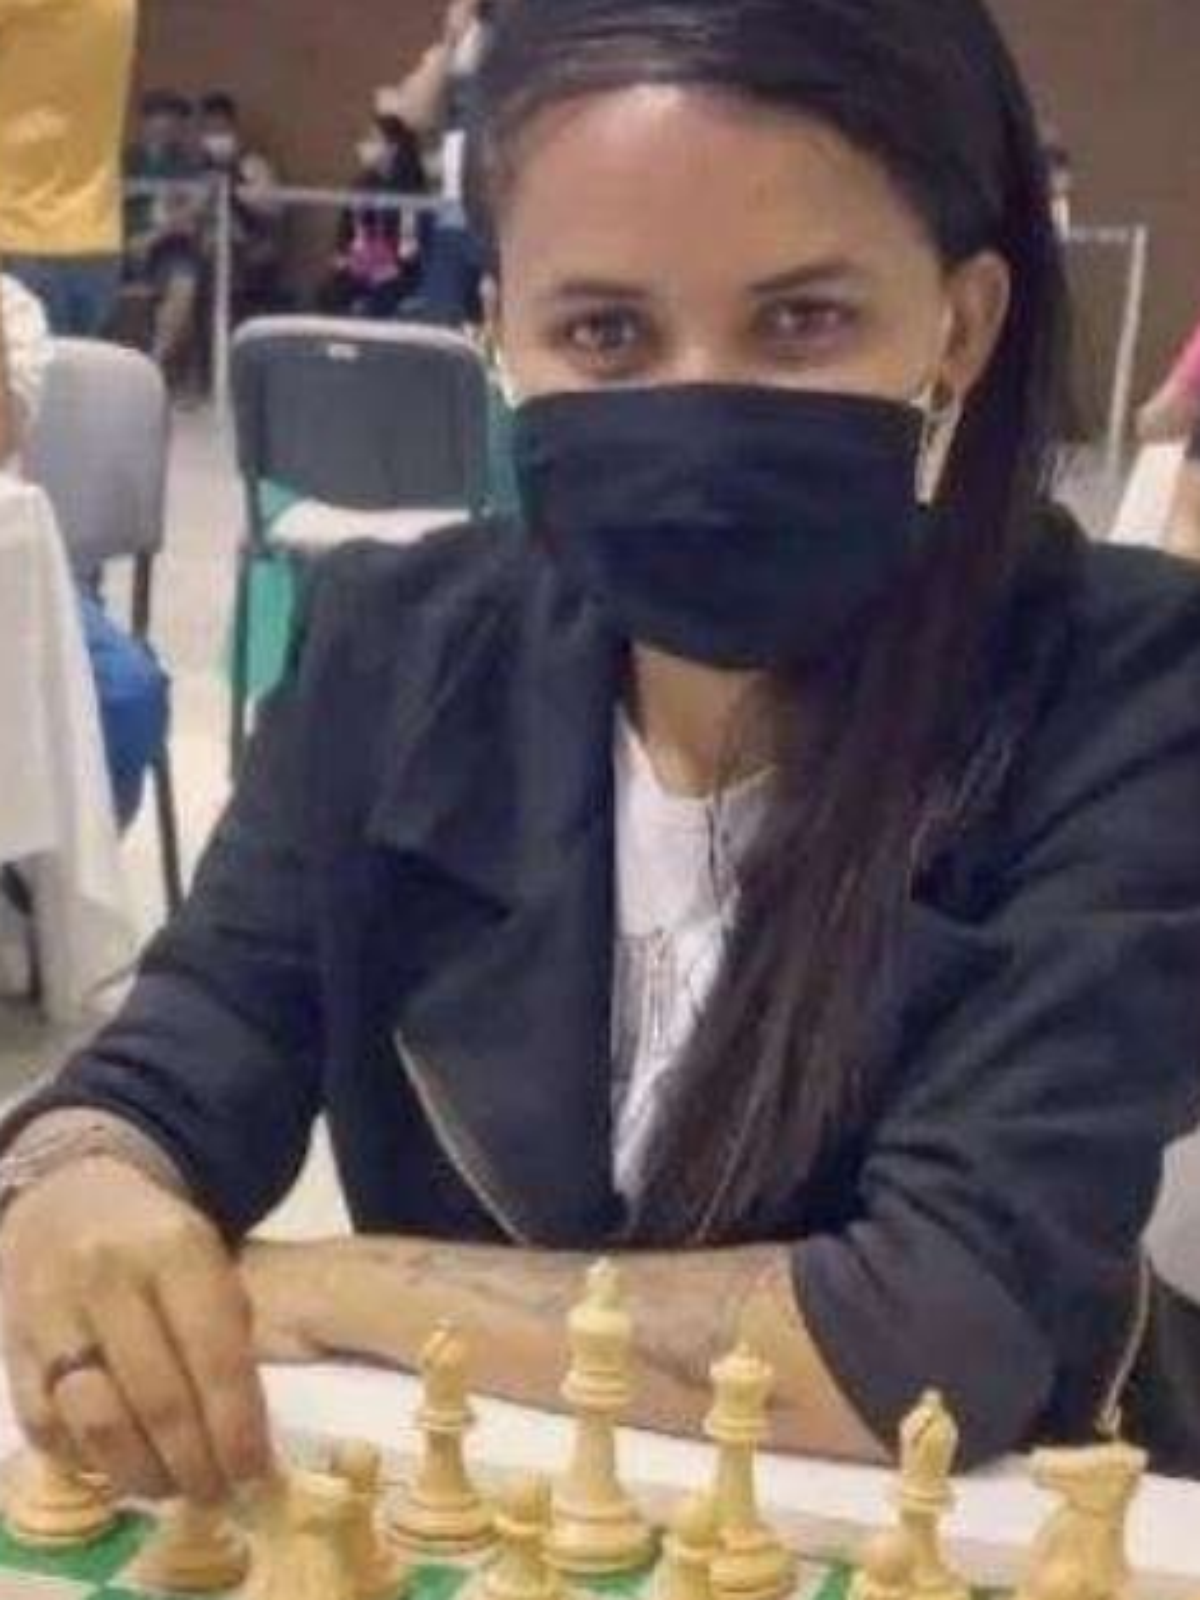 Enxadrista Potiguar precisa do seu apoio para representar o RN no  Campeonato Brasileiro Feminino de Xadrez - O Poti News